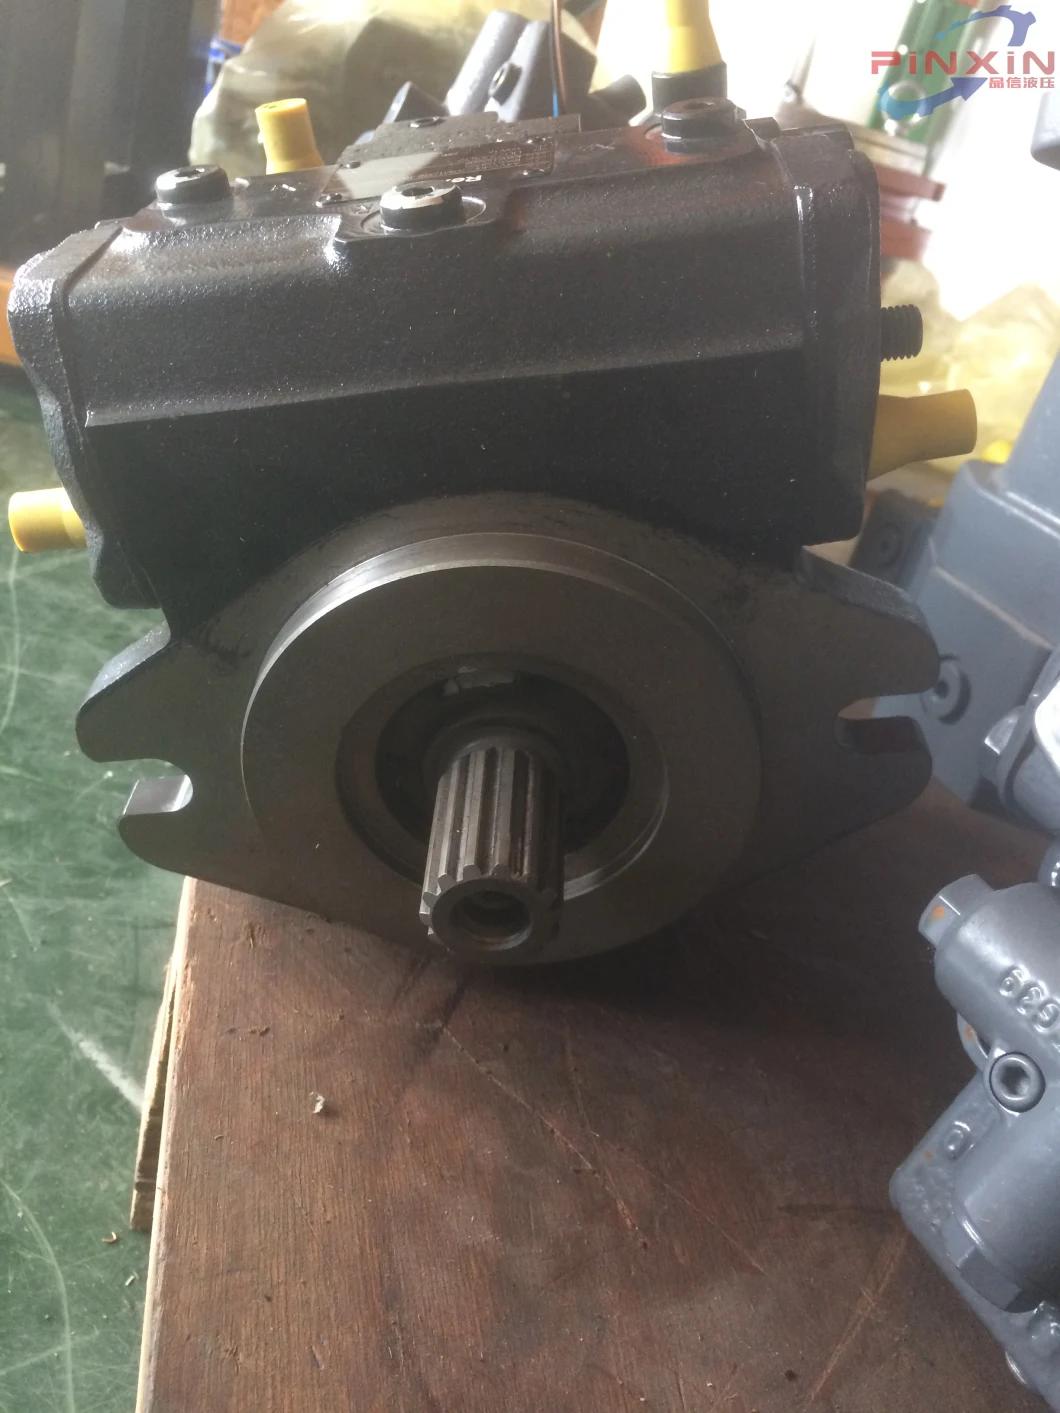 Hydraulic Pump Spare Parts Original A4vg40